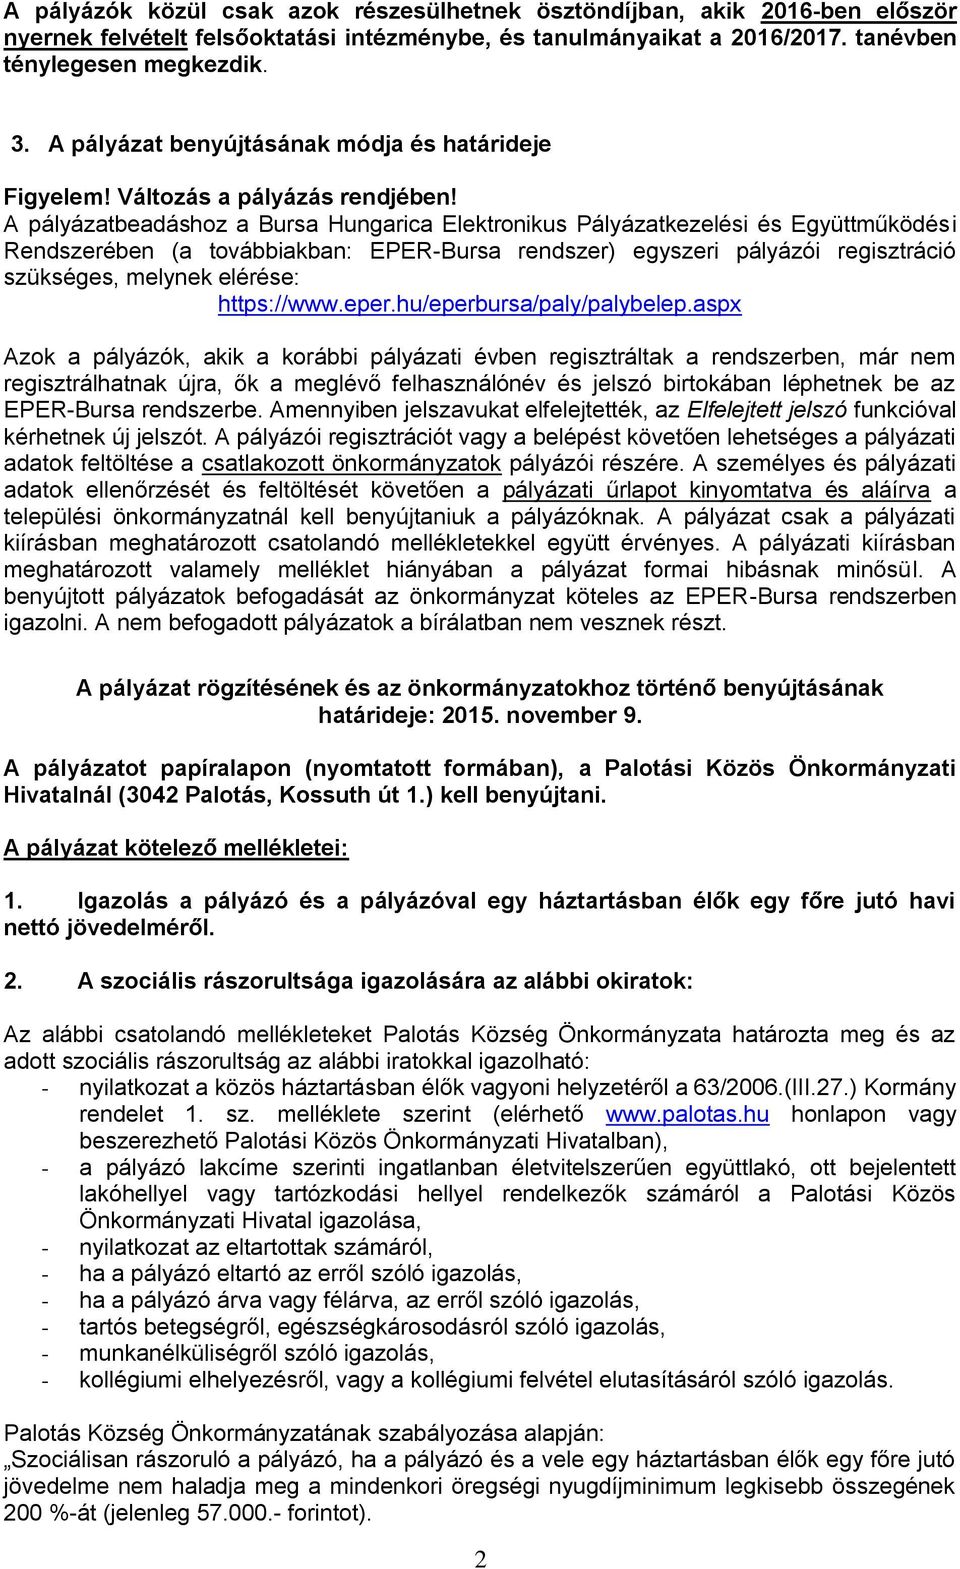 A pályázatbeadáshoz a Bursa Hungarica Elektronikus Pályázatkezelési és Együttműködési Rendszerében (a továbbiakban: EPER-Bursa rendszer) egyszeri pályázói regisztráció szükséges, melynek elérése: